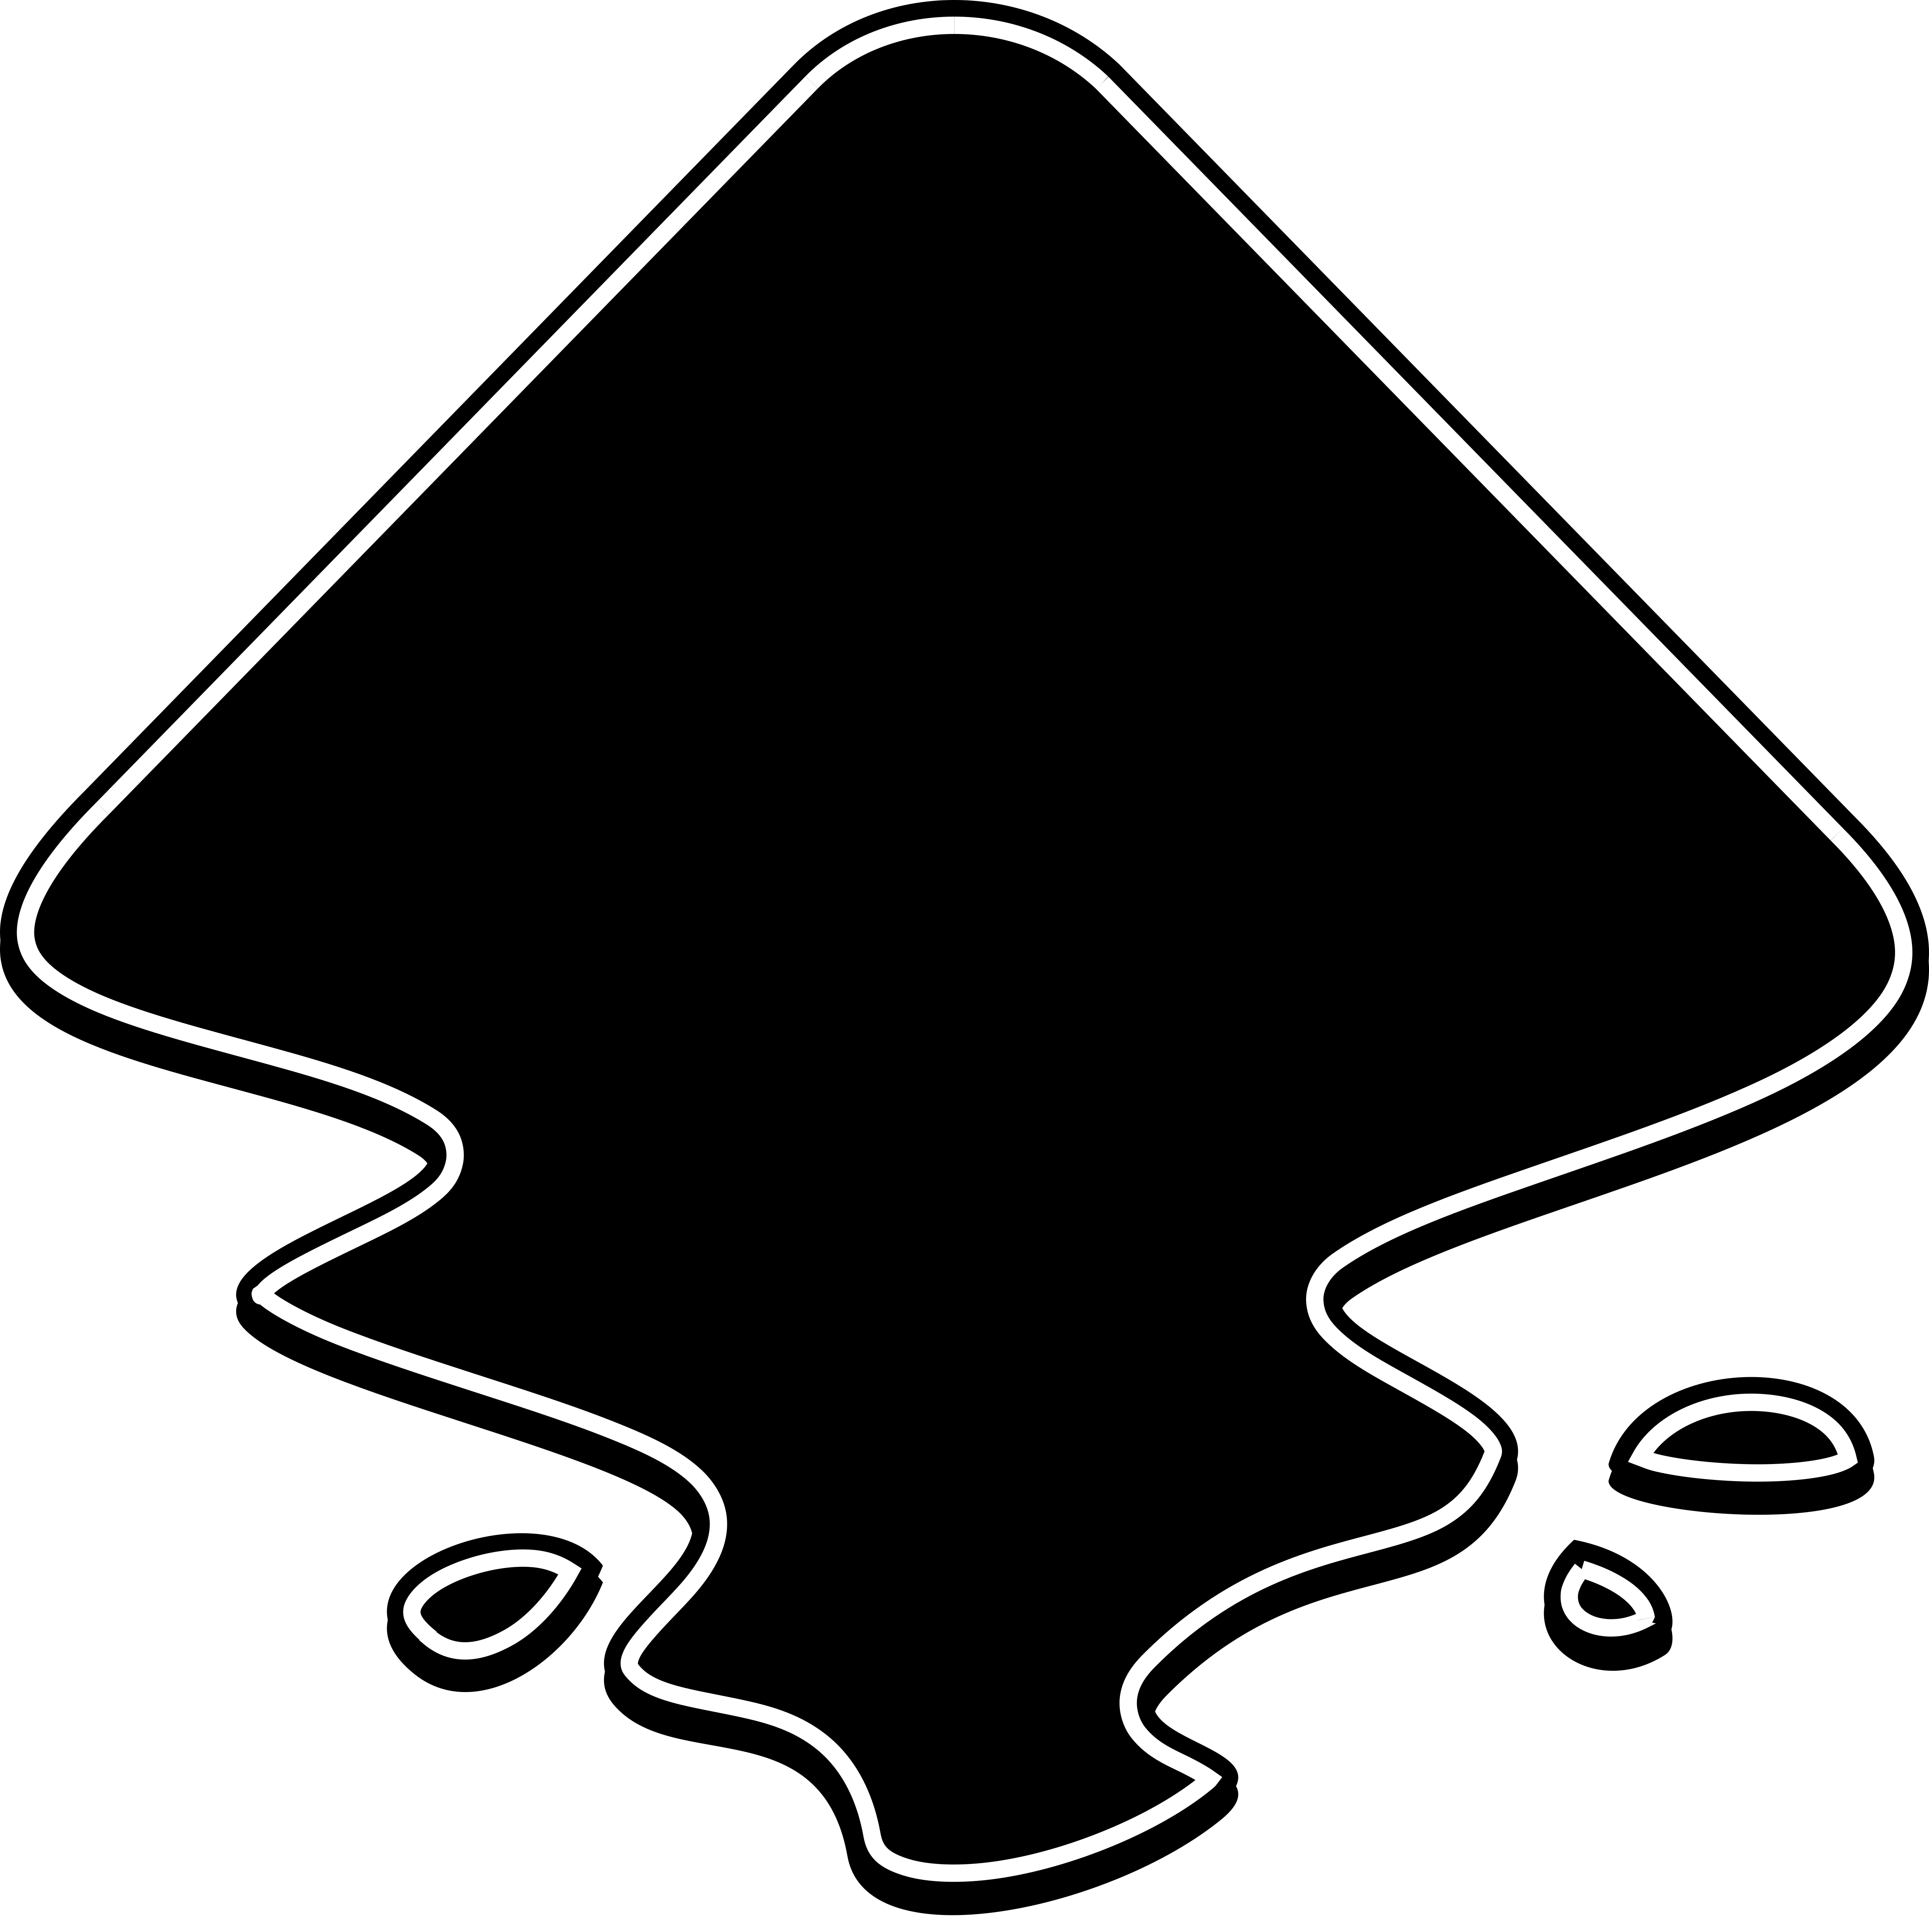 inkscape logo transparent background